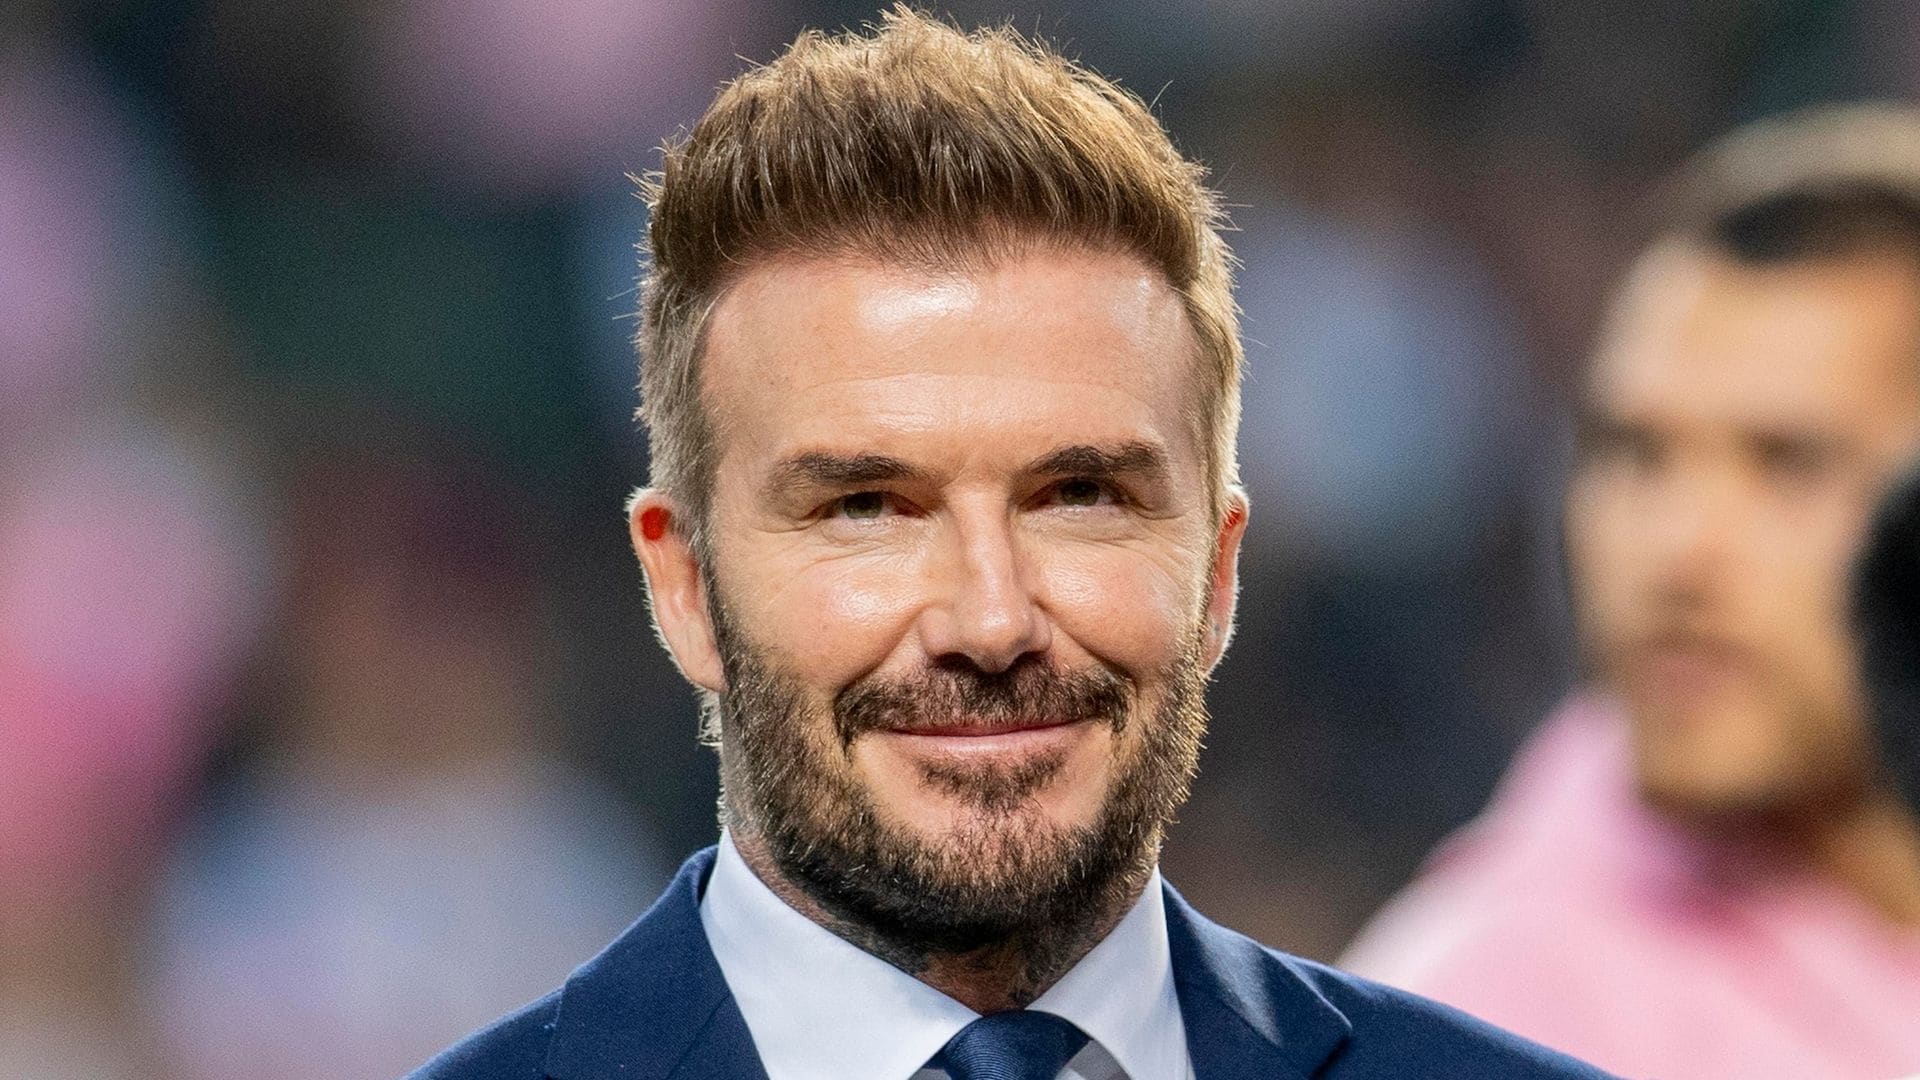 Entre tacos y picante, David Beckham disfruta de su paso por Monterrey